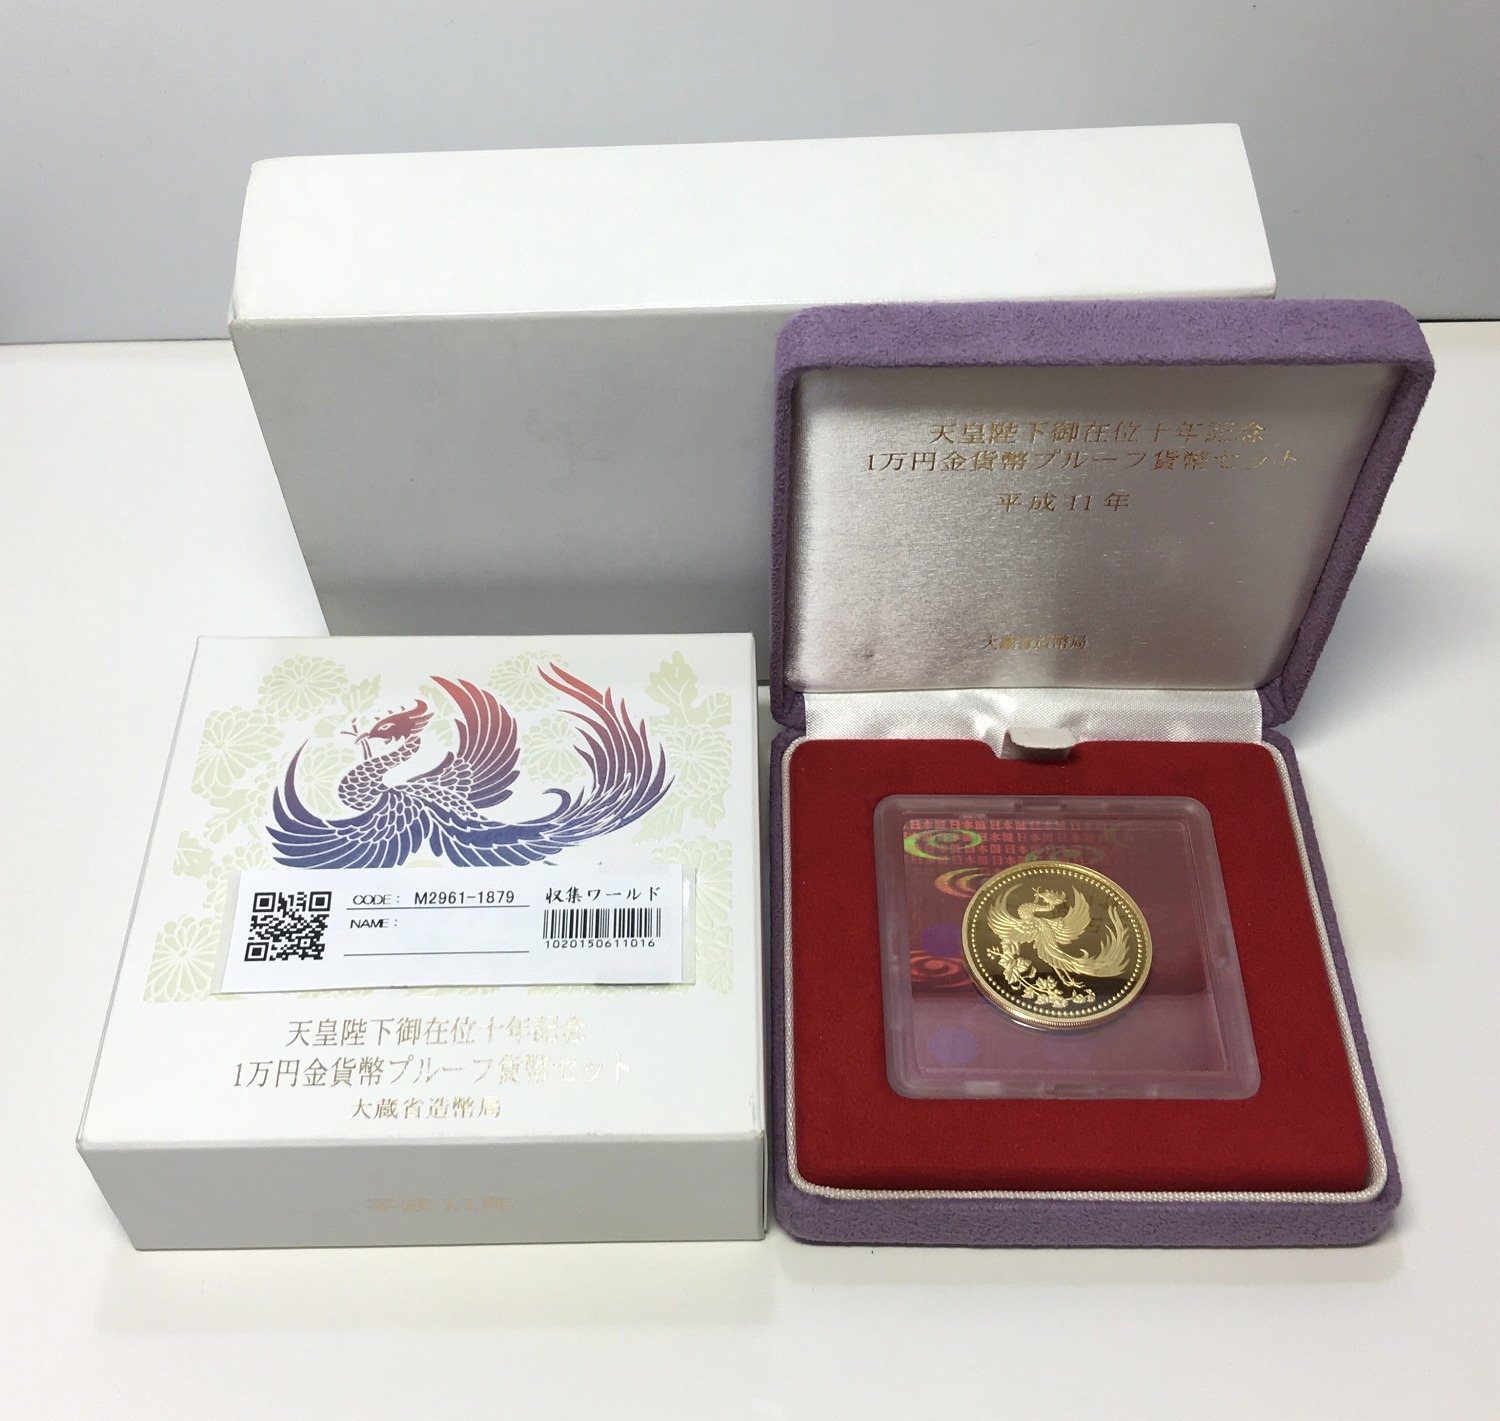 天皇陛下御在位十年記念 1万円金貨プルーフ貨幣セット 1999年 純金20g